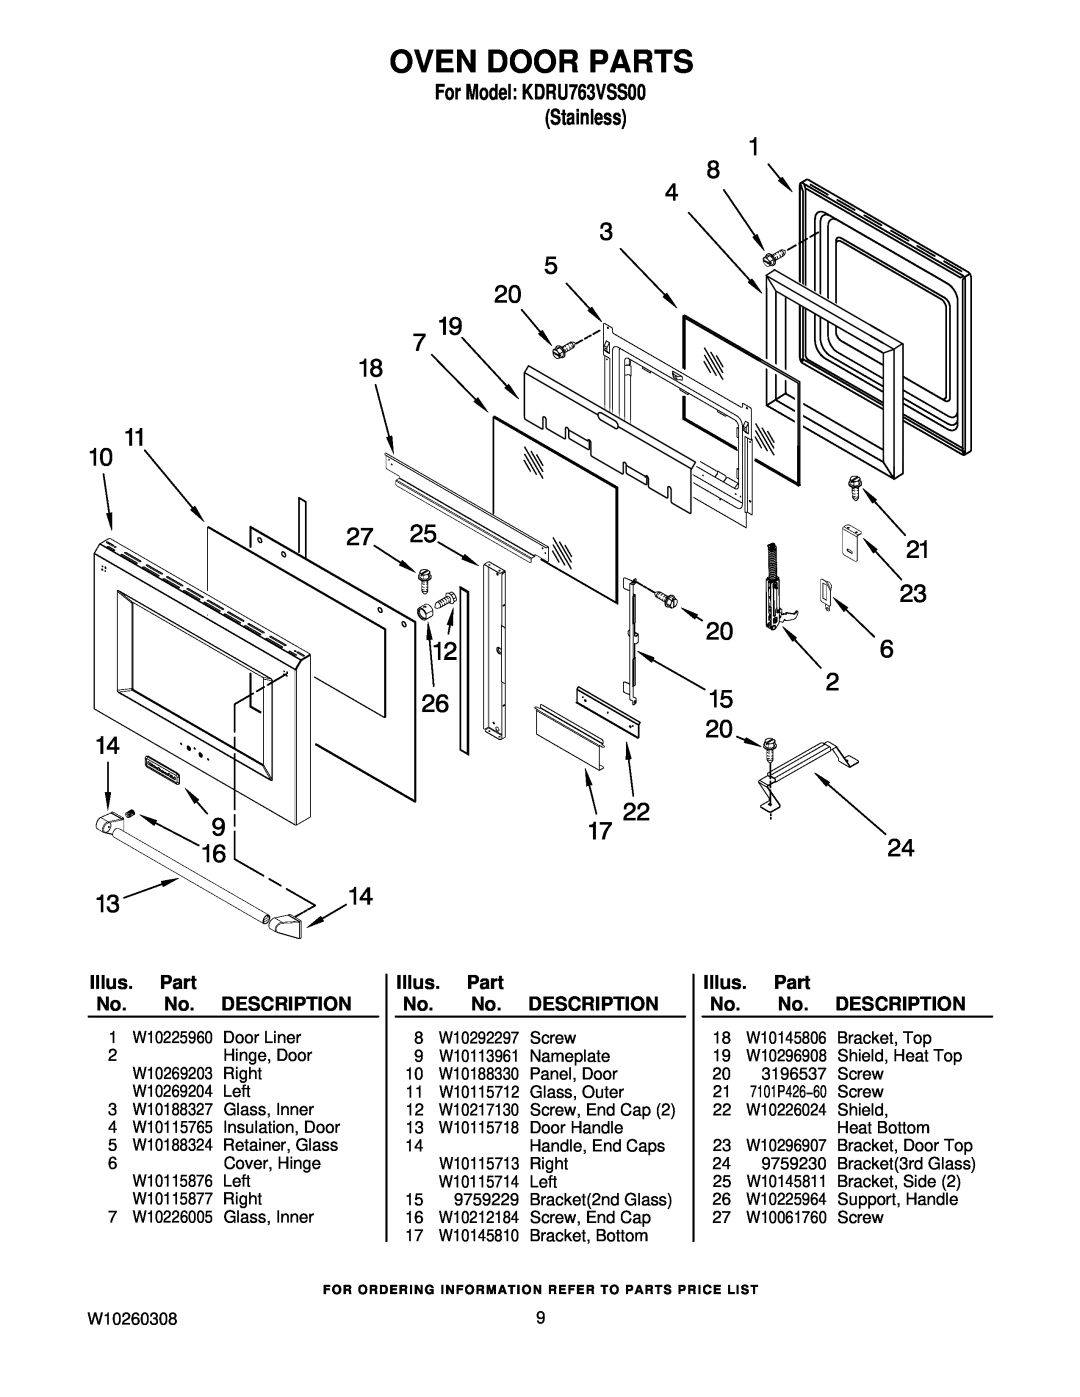 KitchenAid KDRU763VSS00 manual Oven Door Parts, Illus. Part No. No. DESCRIPTION 